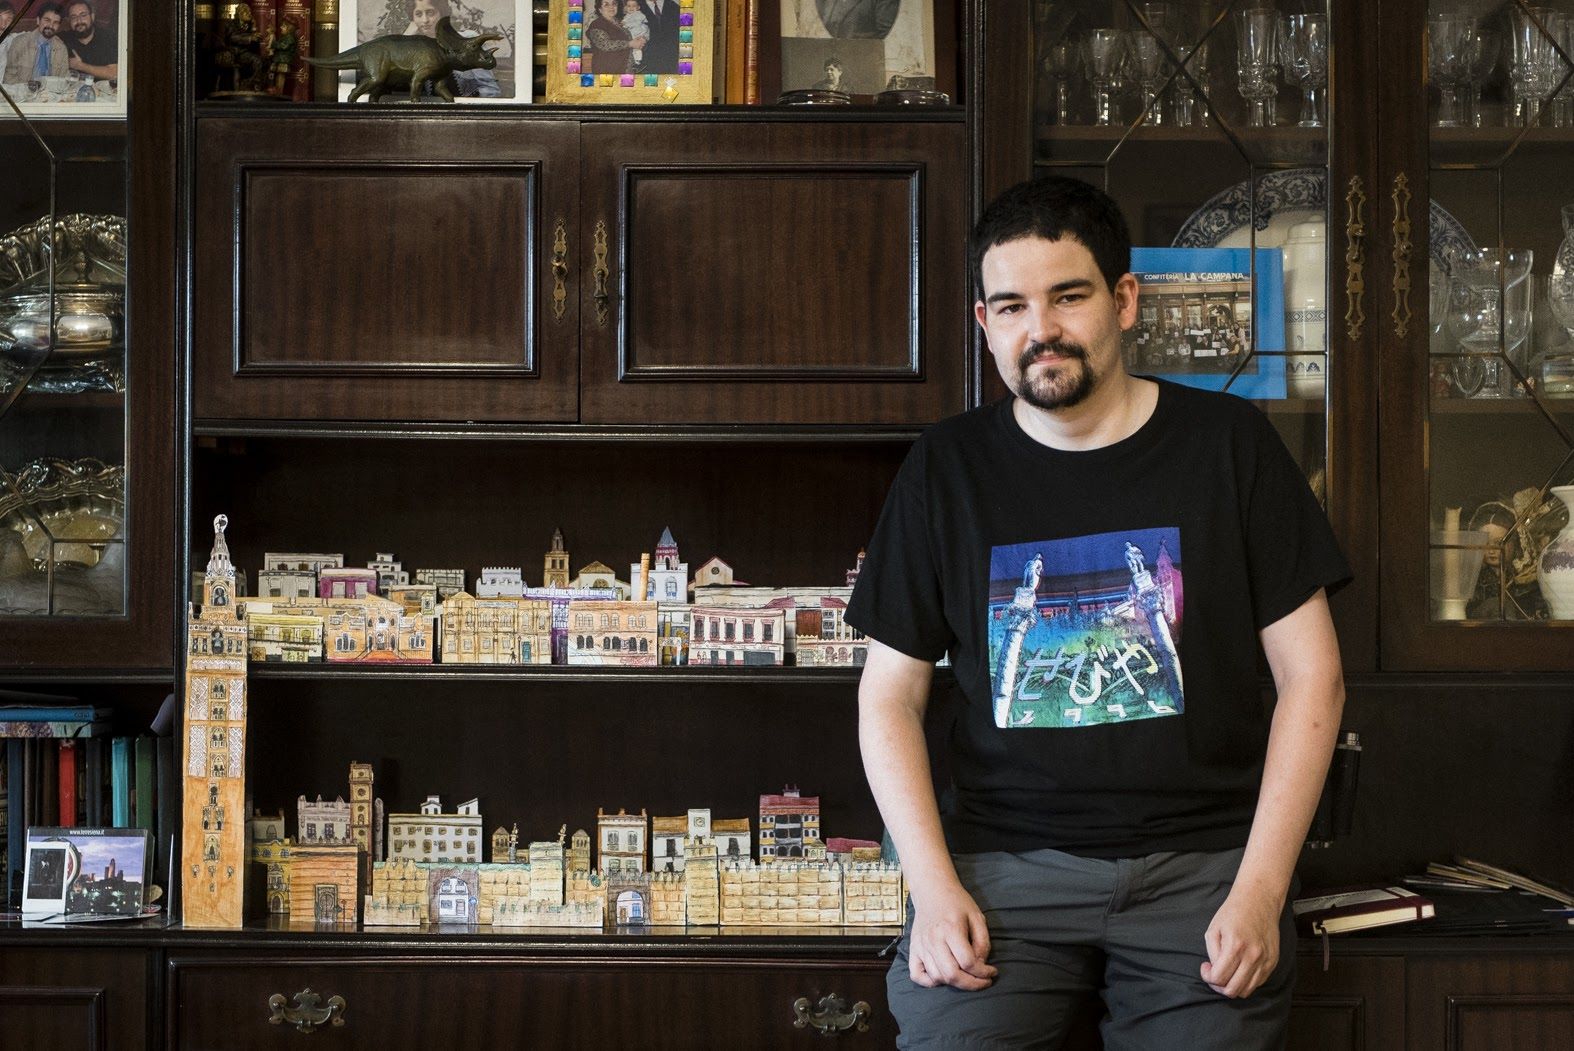 Bernar está creando una maqueta en miniatura de Sevilla hecha con cajas de cartón.